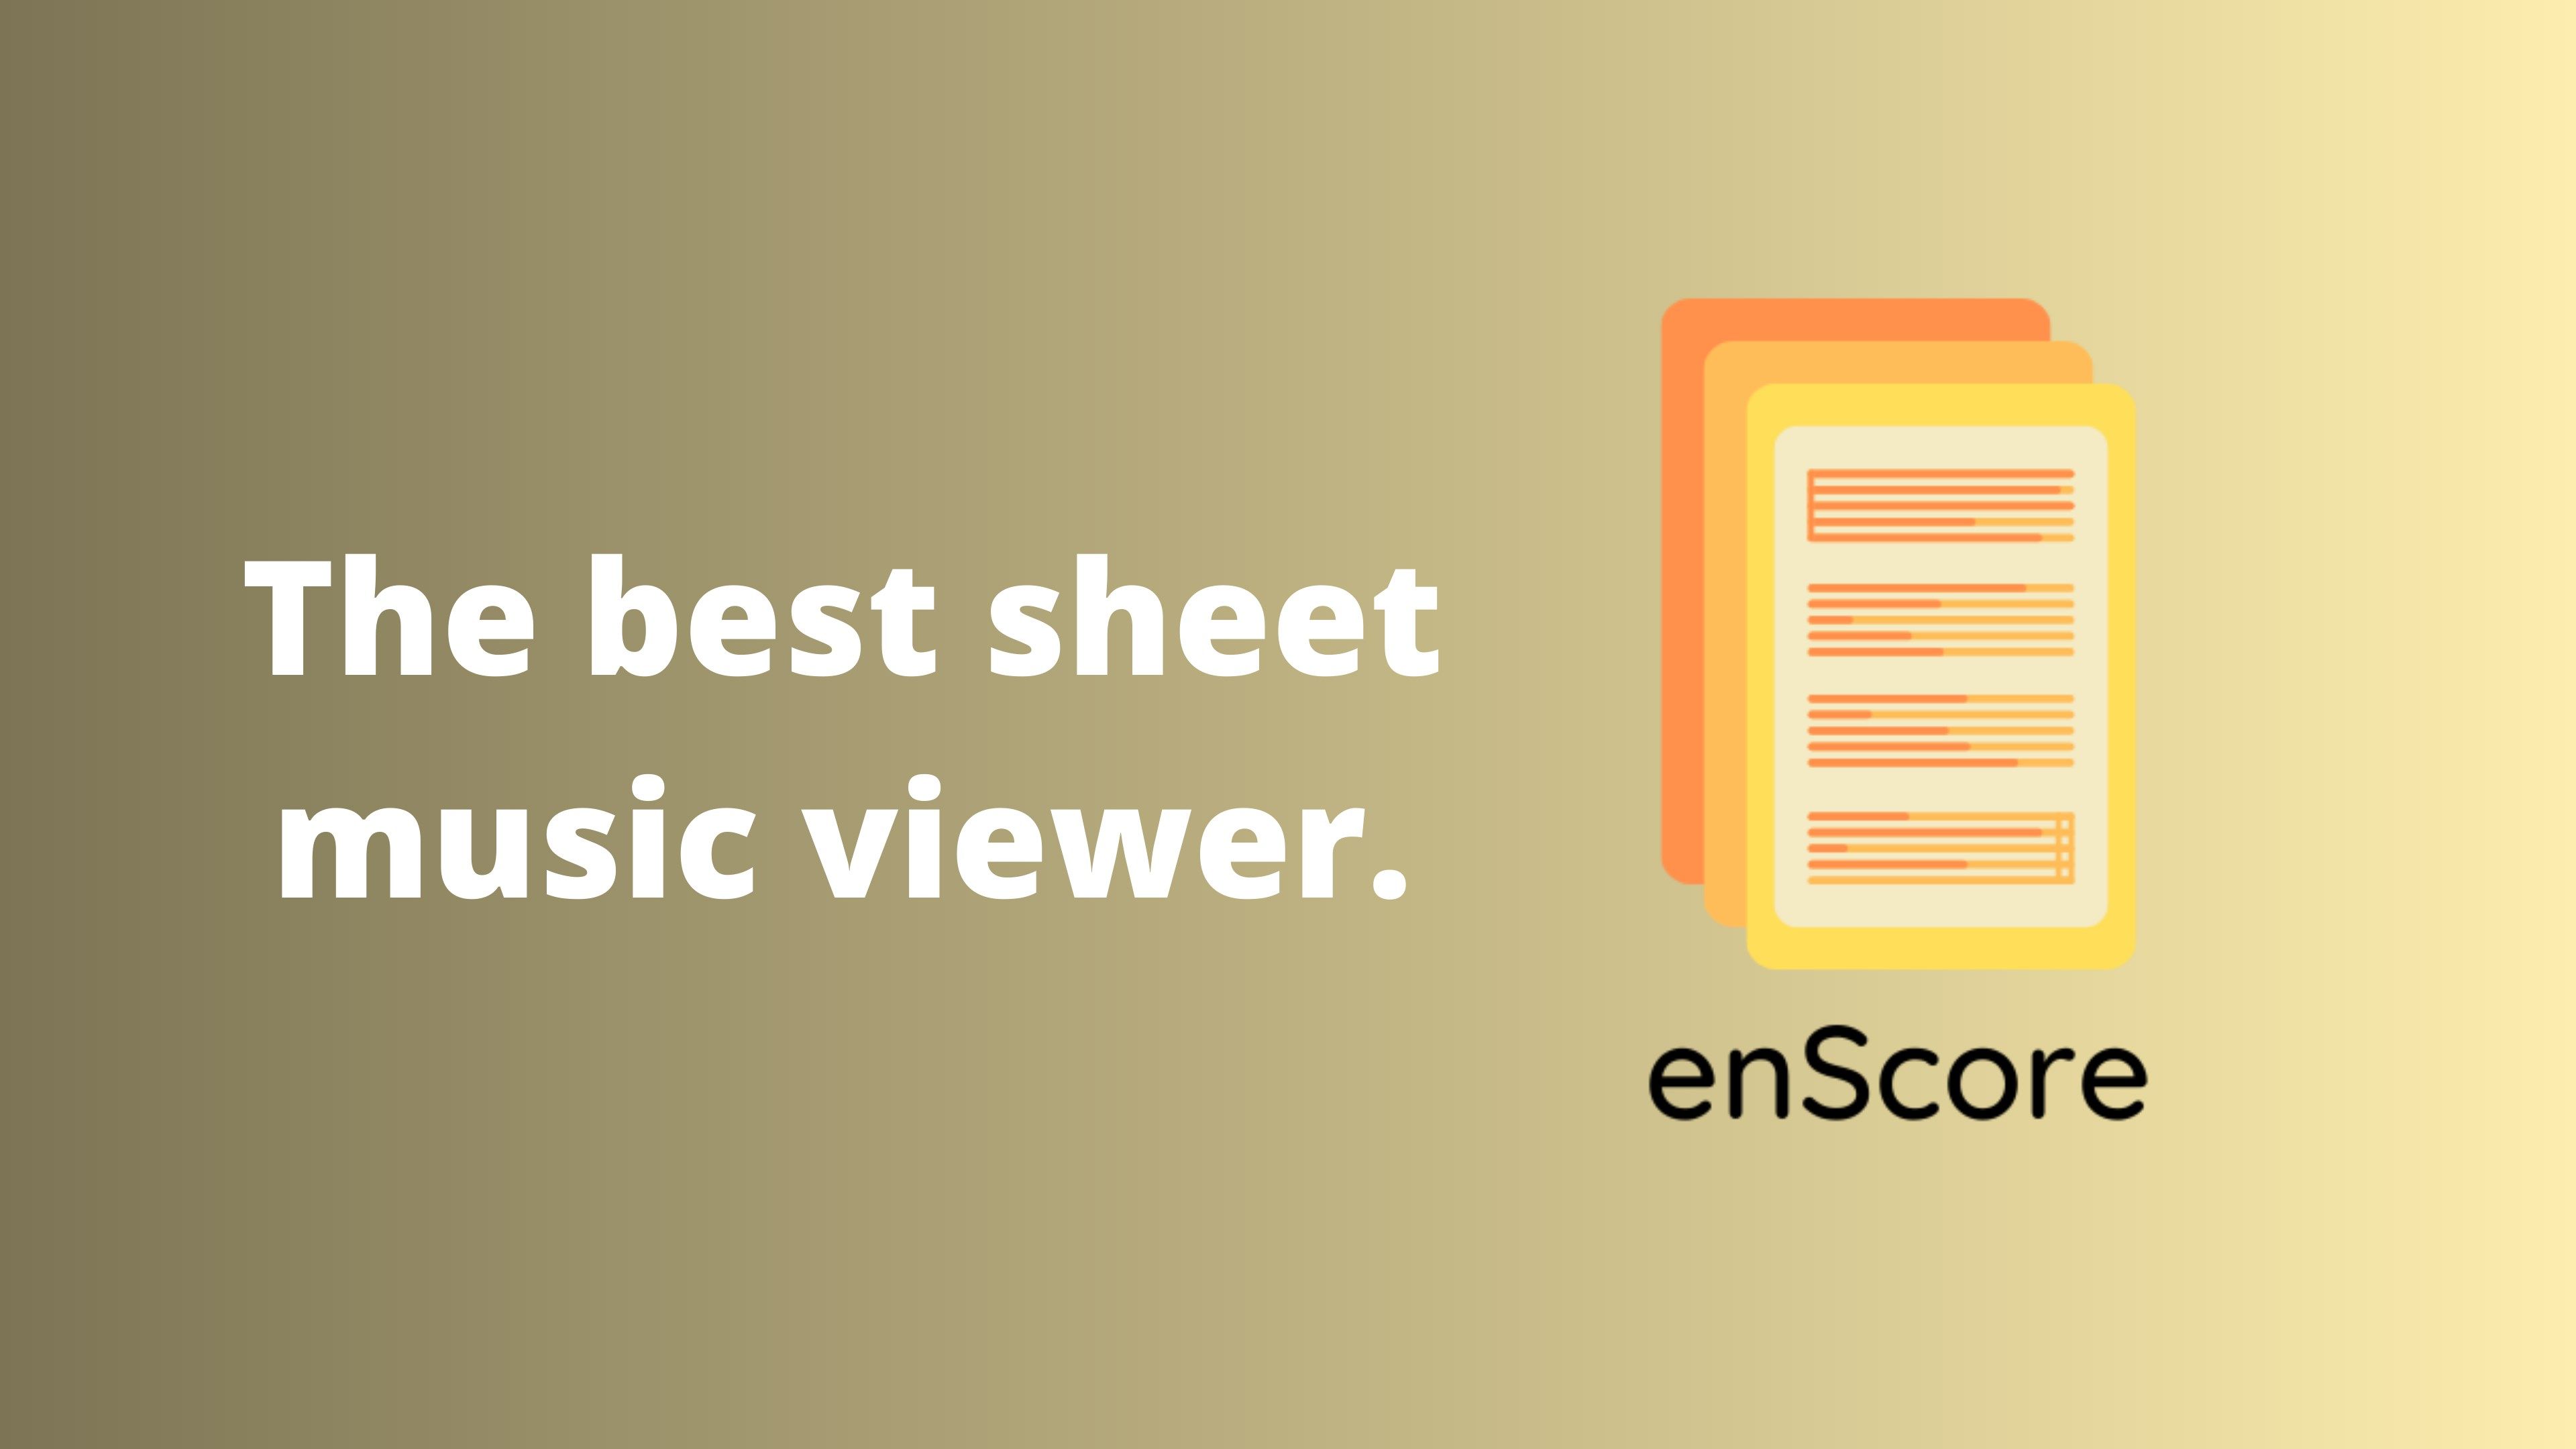 The best sheet music viewer.